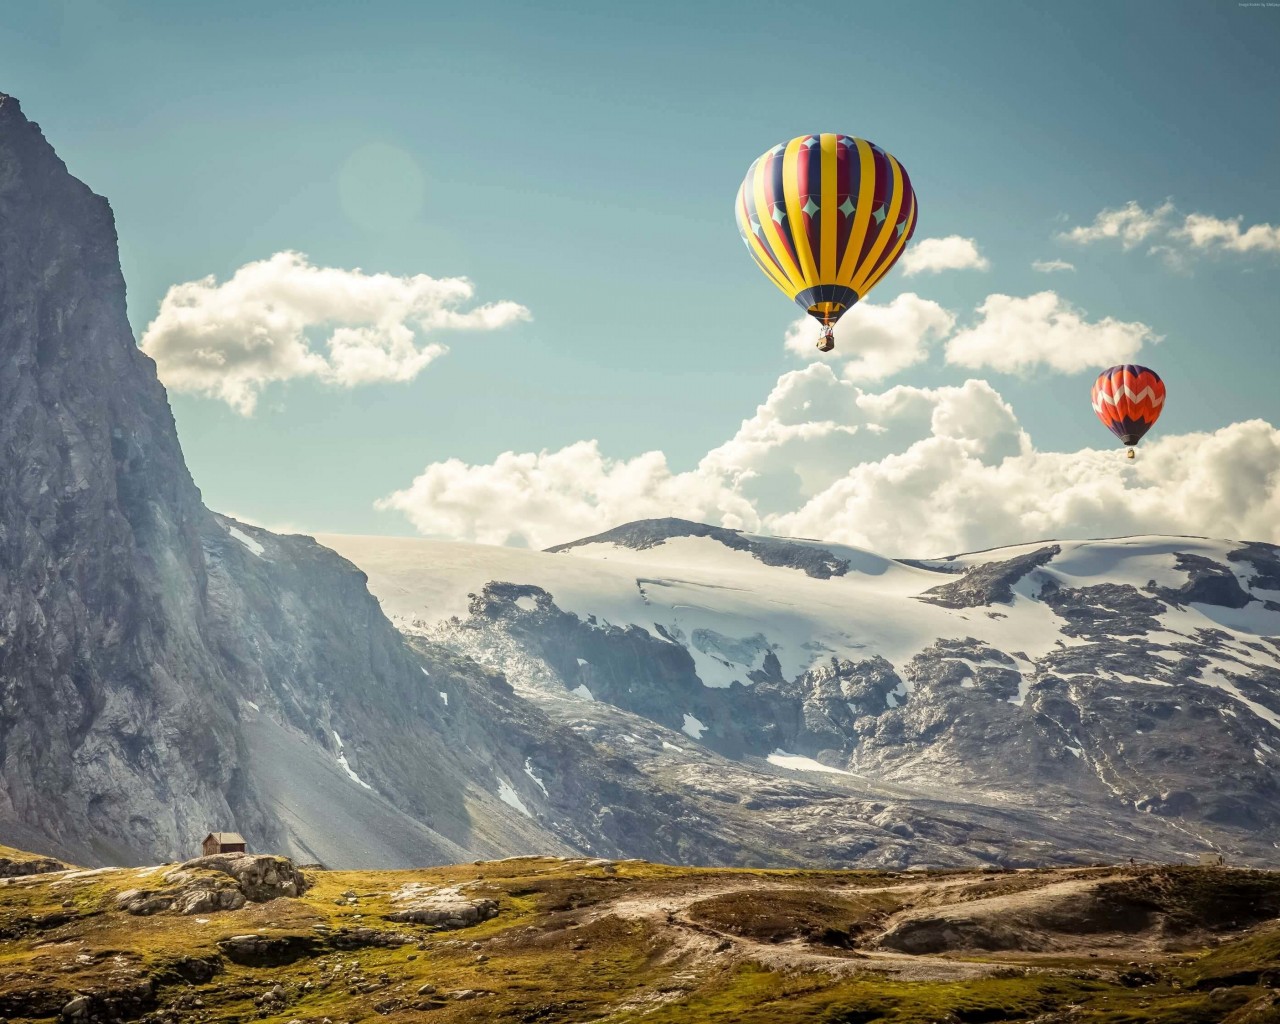 Hot Air Balloon Over the Mountain Wallpaper for Desktop 1280x1024